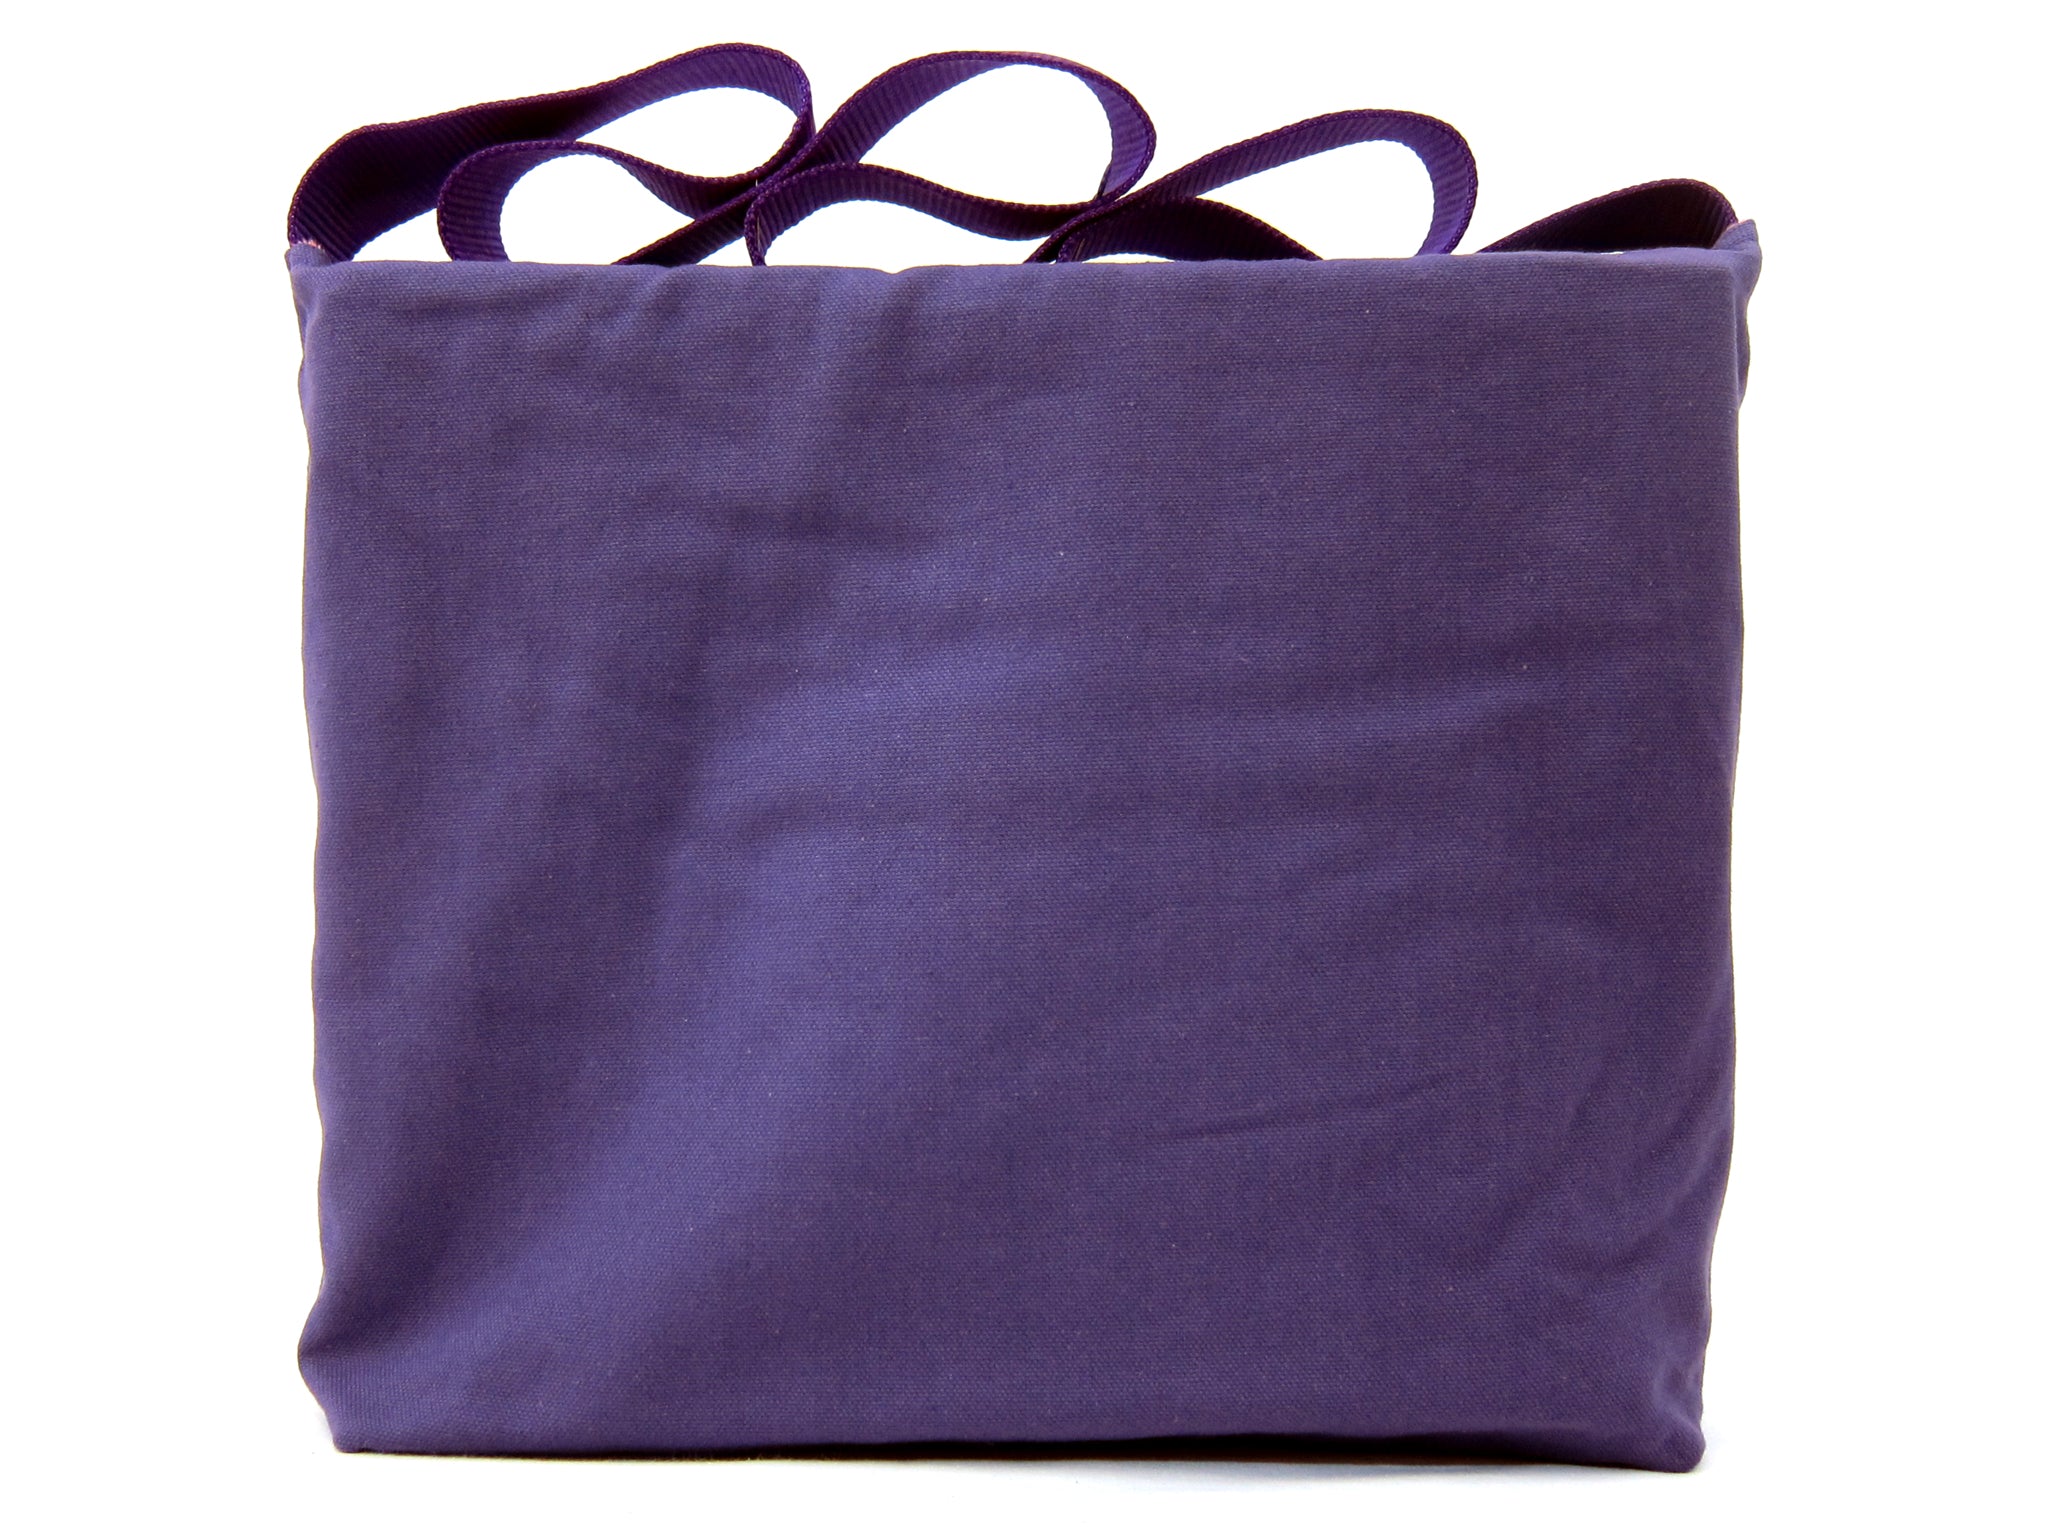 Violet the Monster Bag